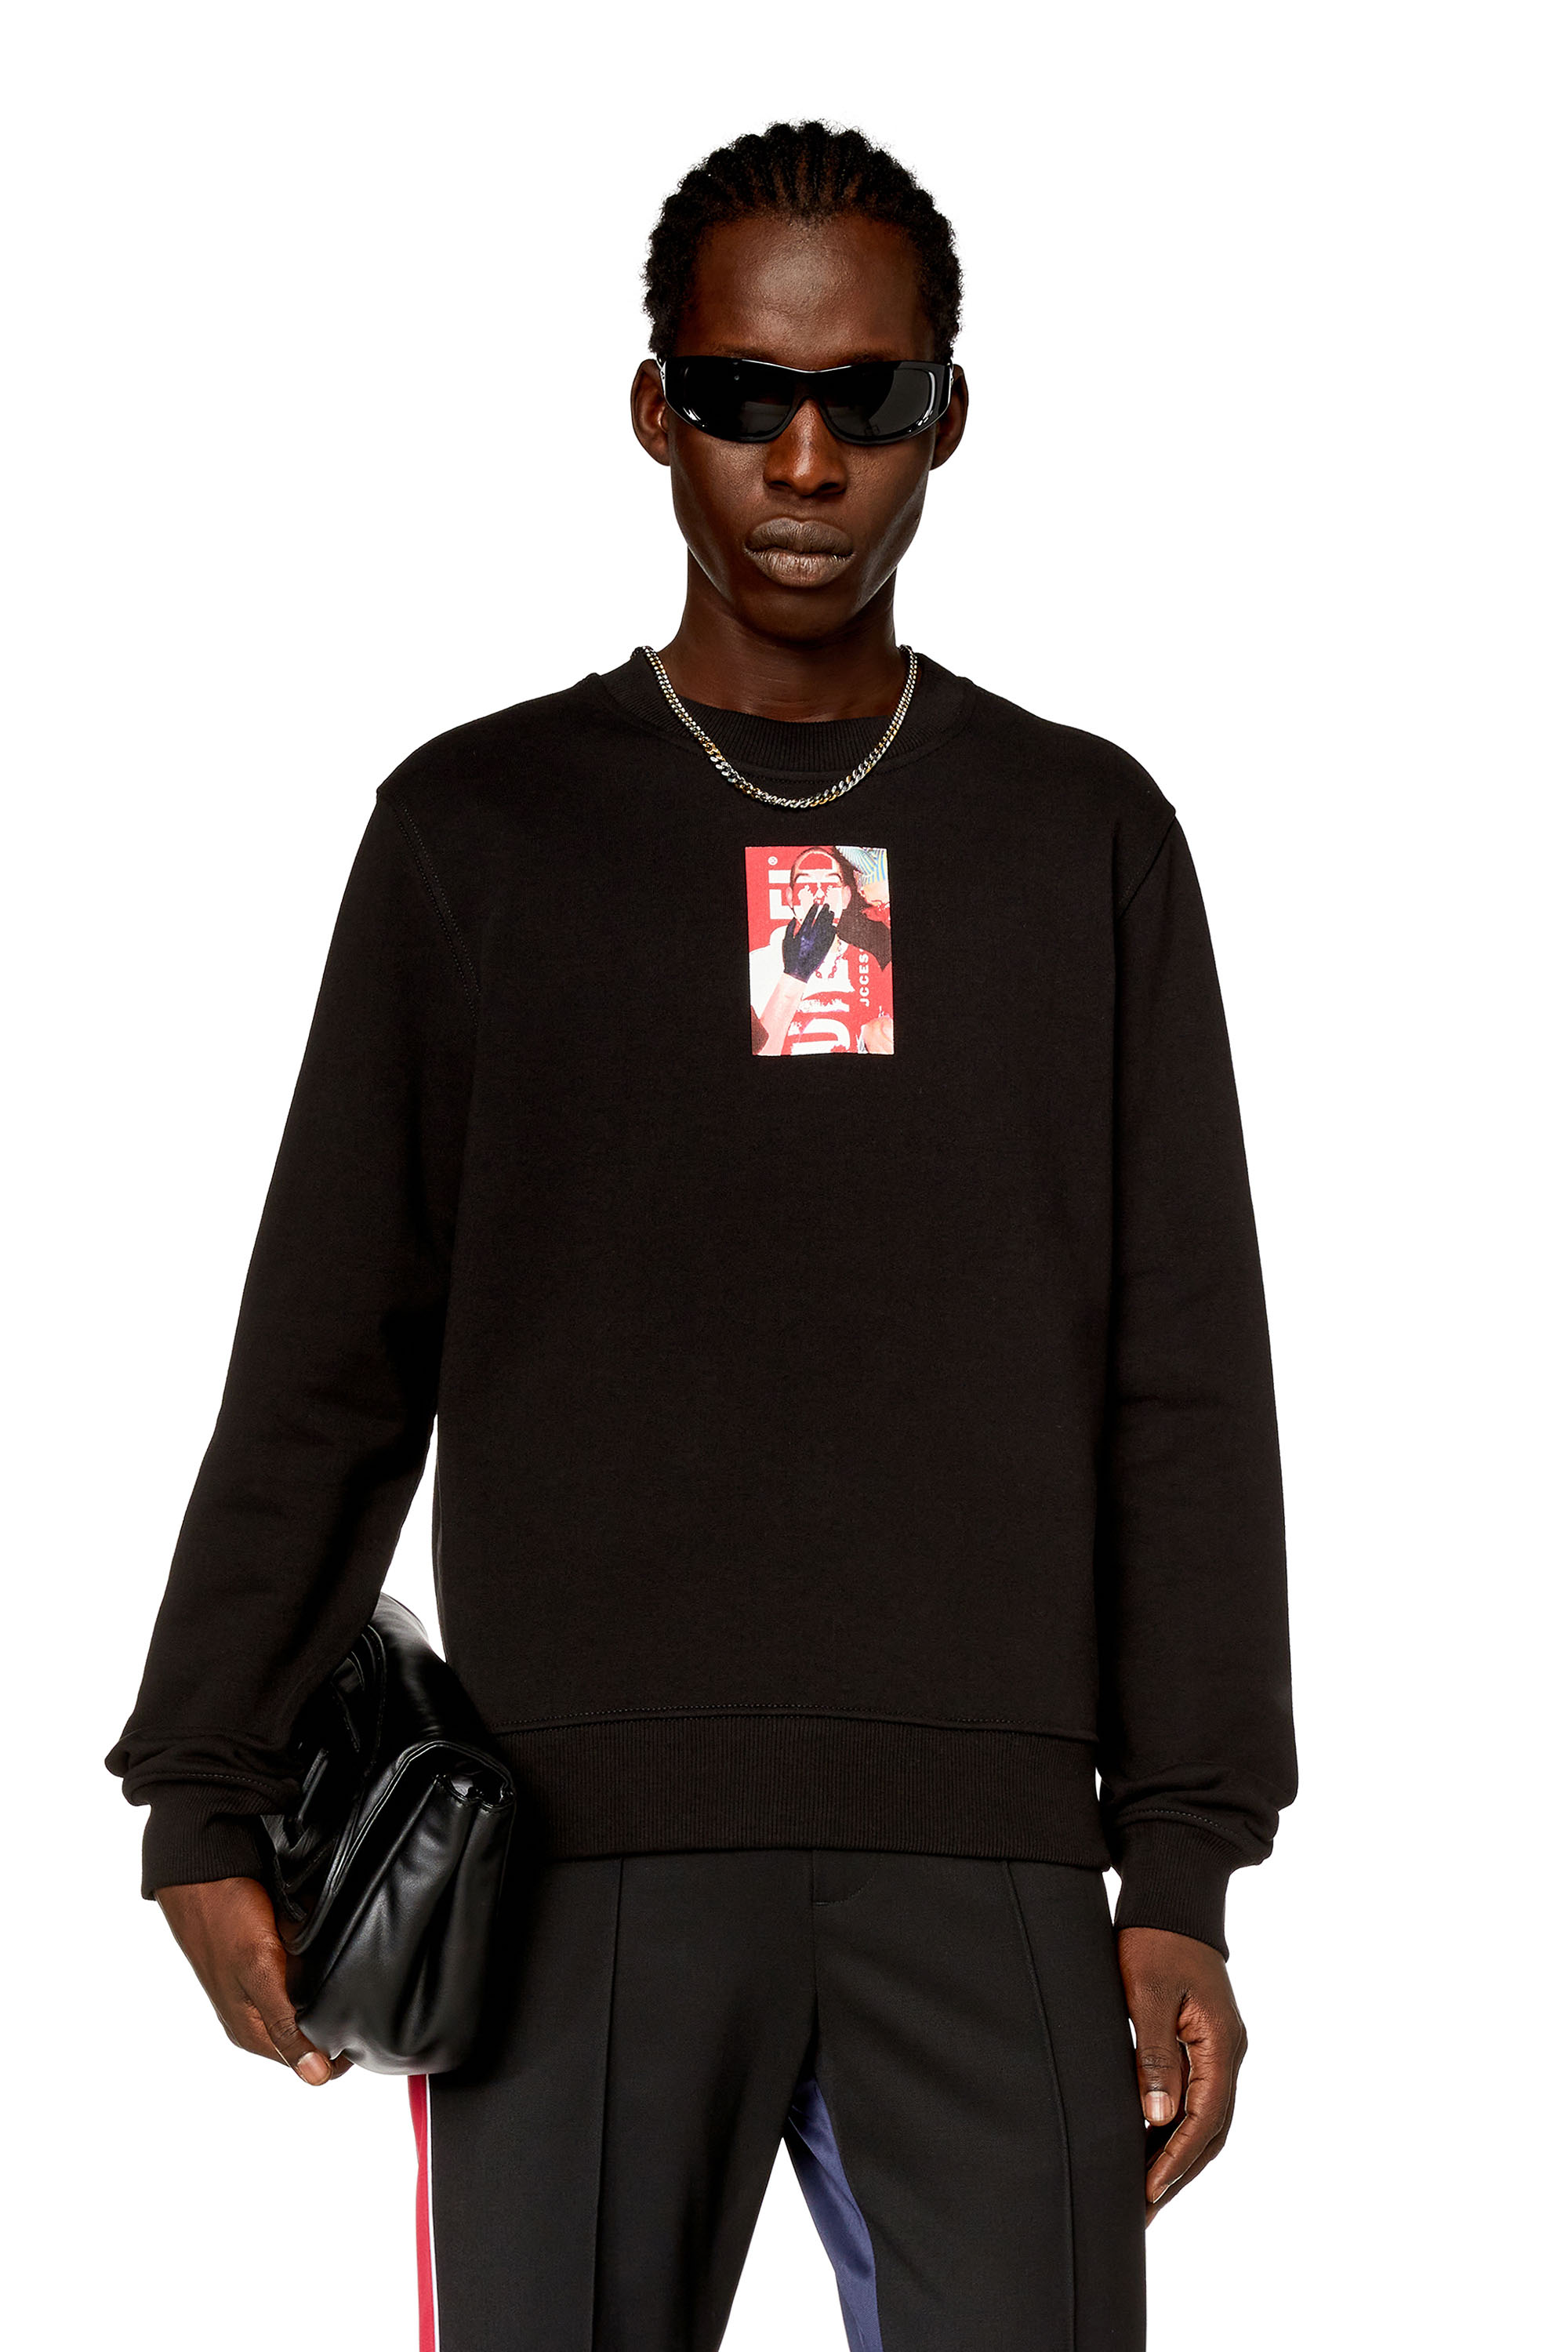 Diesel - Sweat-shirt avec logo photo numérique - Pull Cotton - Homme - Noir